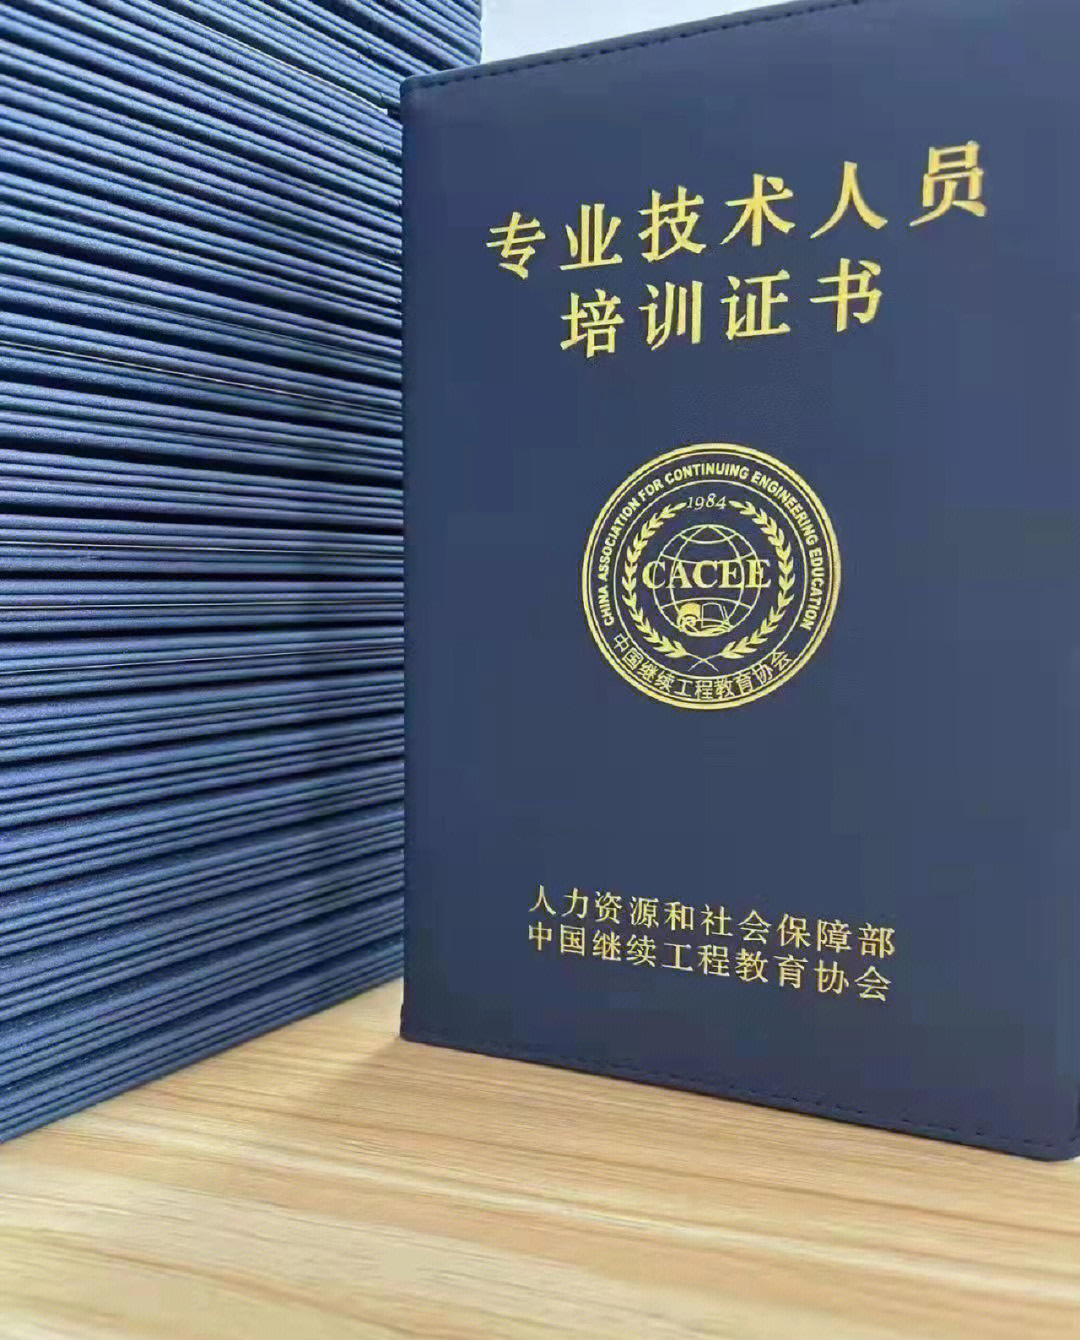 人社部中国继续工程教育协会